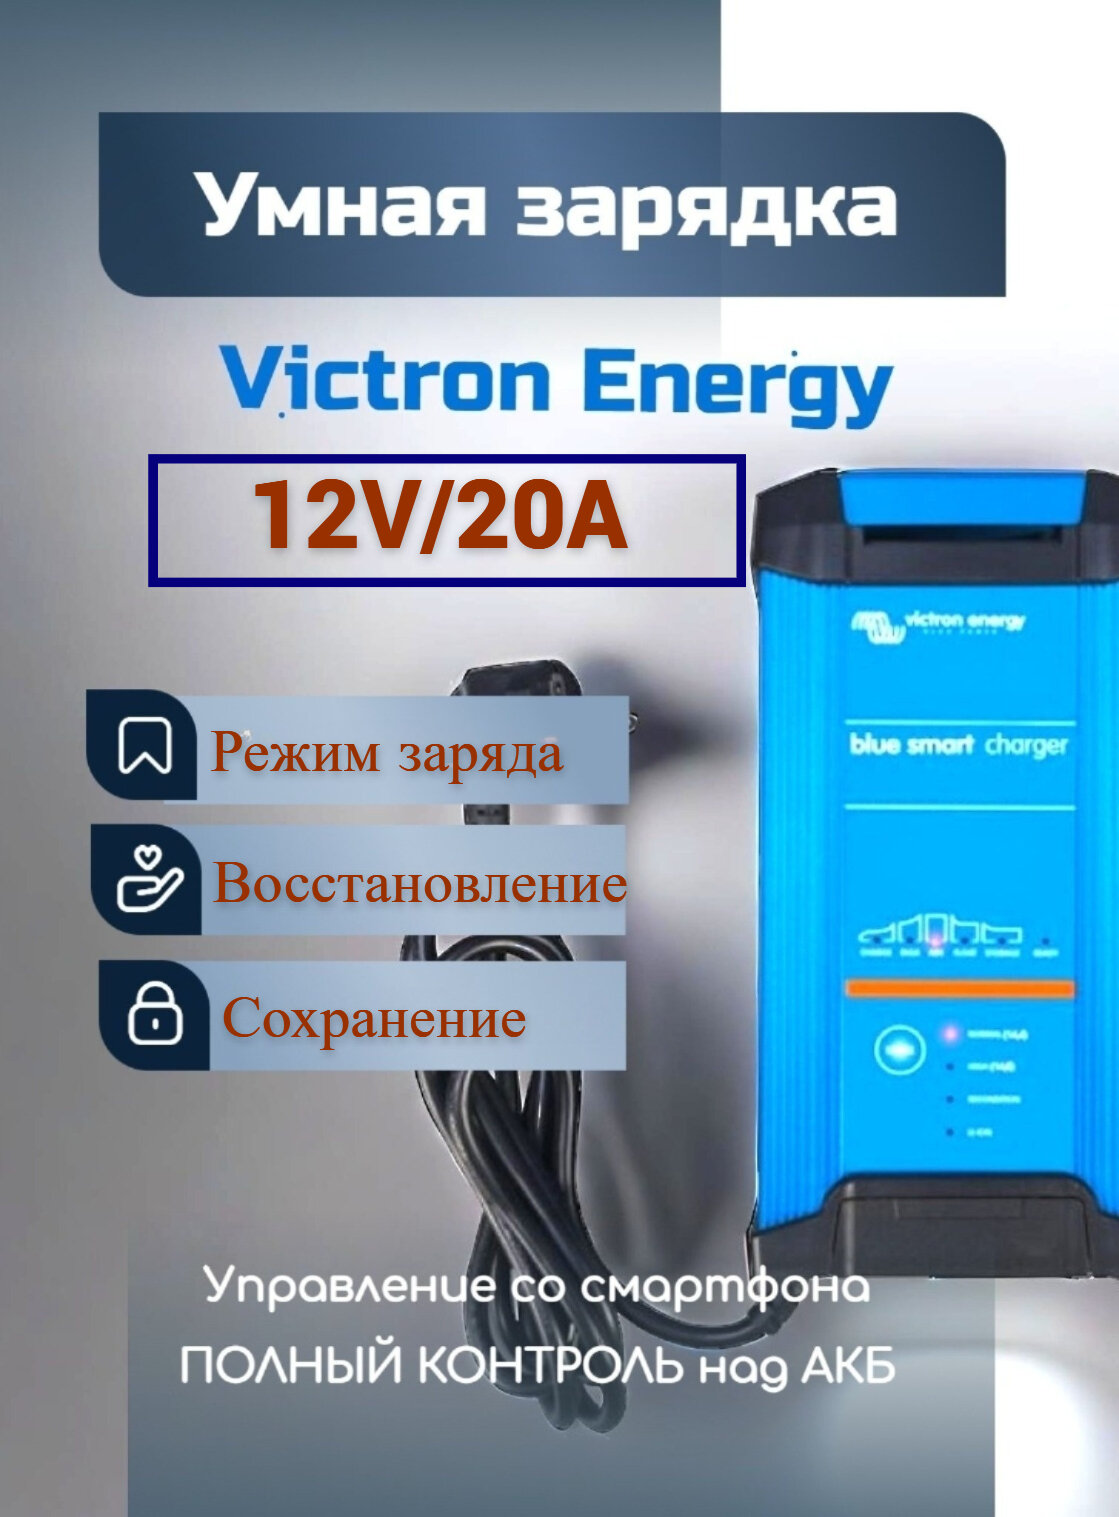 Универсальное зарядное устройство Victron Energy Blue Smart IP22 Charger 12/20 (1) для зарядки всех видов АКБ с напряжением 12В